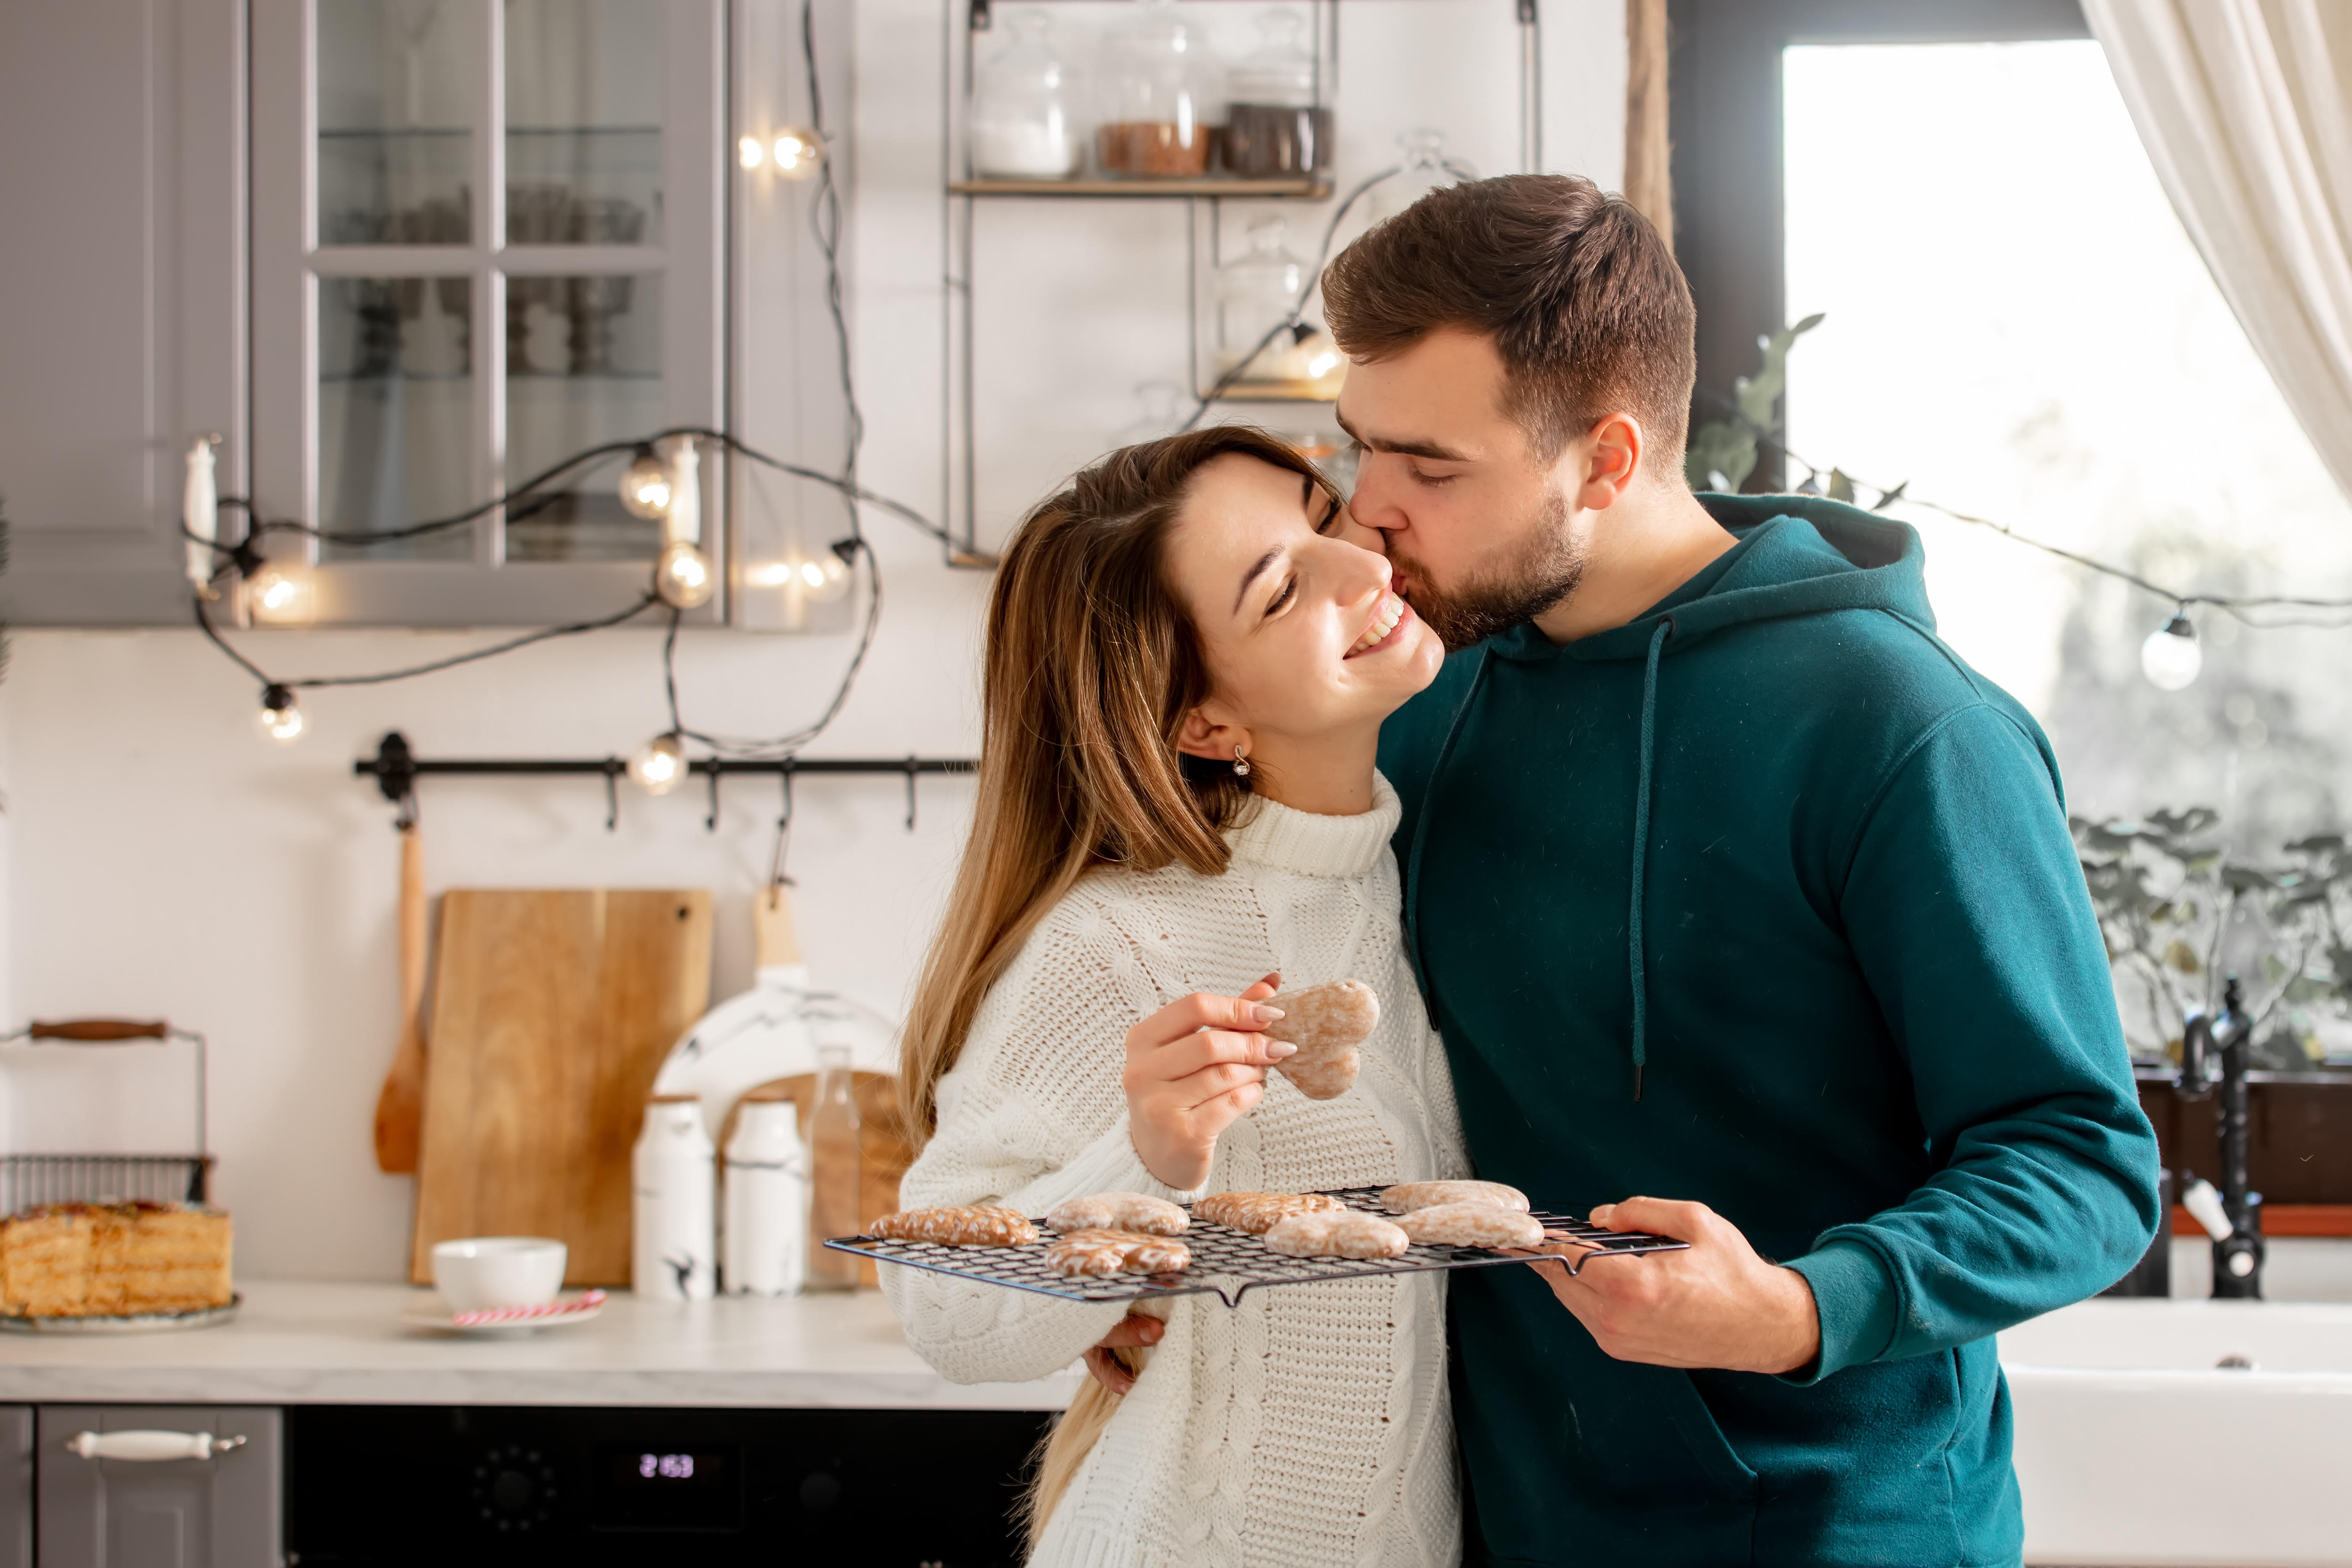 Un homme embrasse sa petite amie tout en préparant des biscuits | Source : Shutterstock